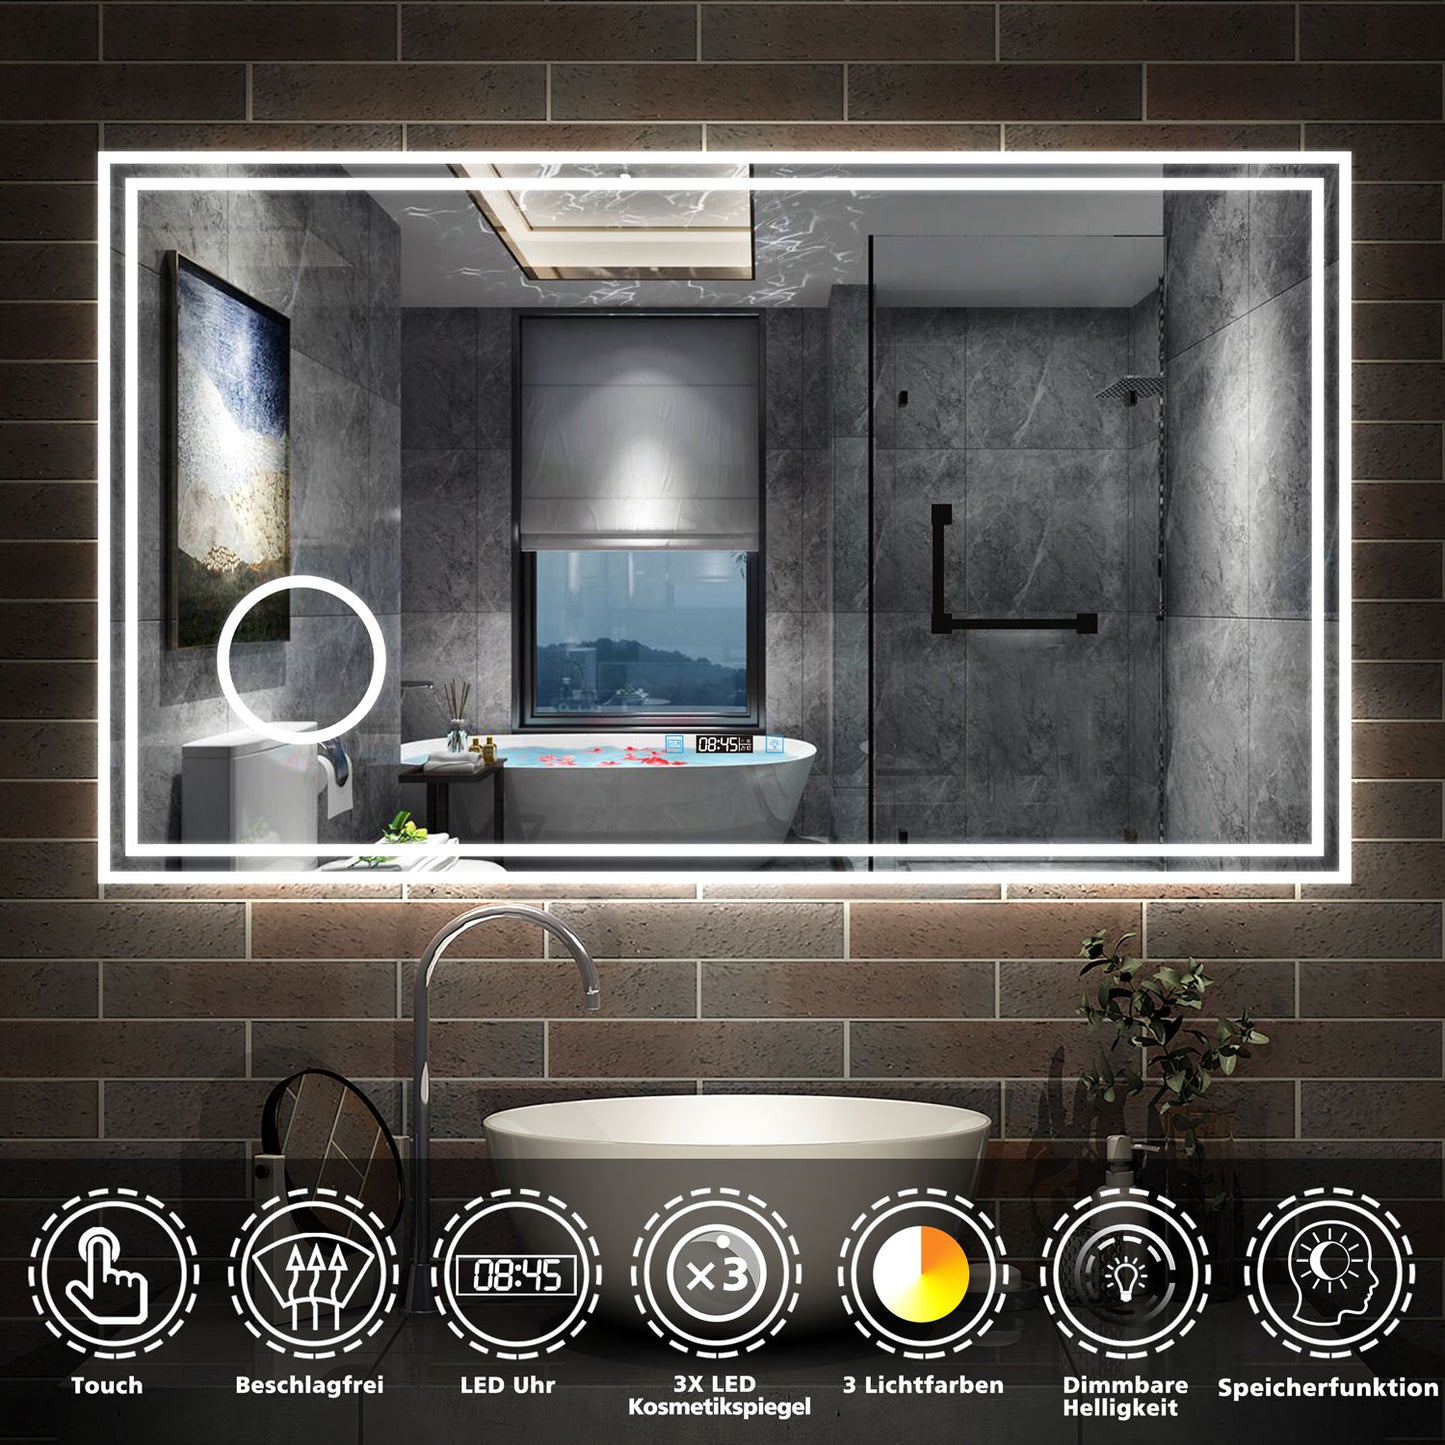 LED Badspiegel 80 -160 cm Wandspiegel mit Uhr, Touch, Beschlagfrei,3-Fach Vergrößerung Schminkspiegel IP44 3 Lichtfarbe 2700-6500K,Kalt/Neutral/Warmweiß energiesparend